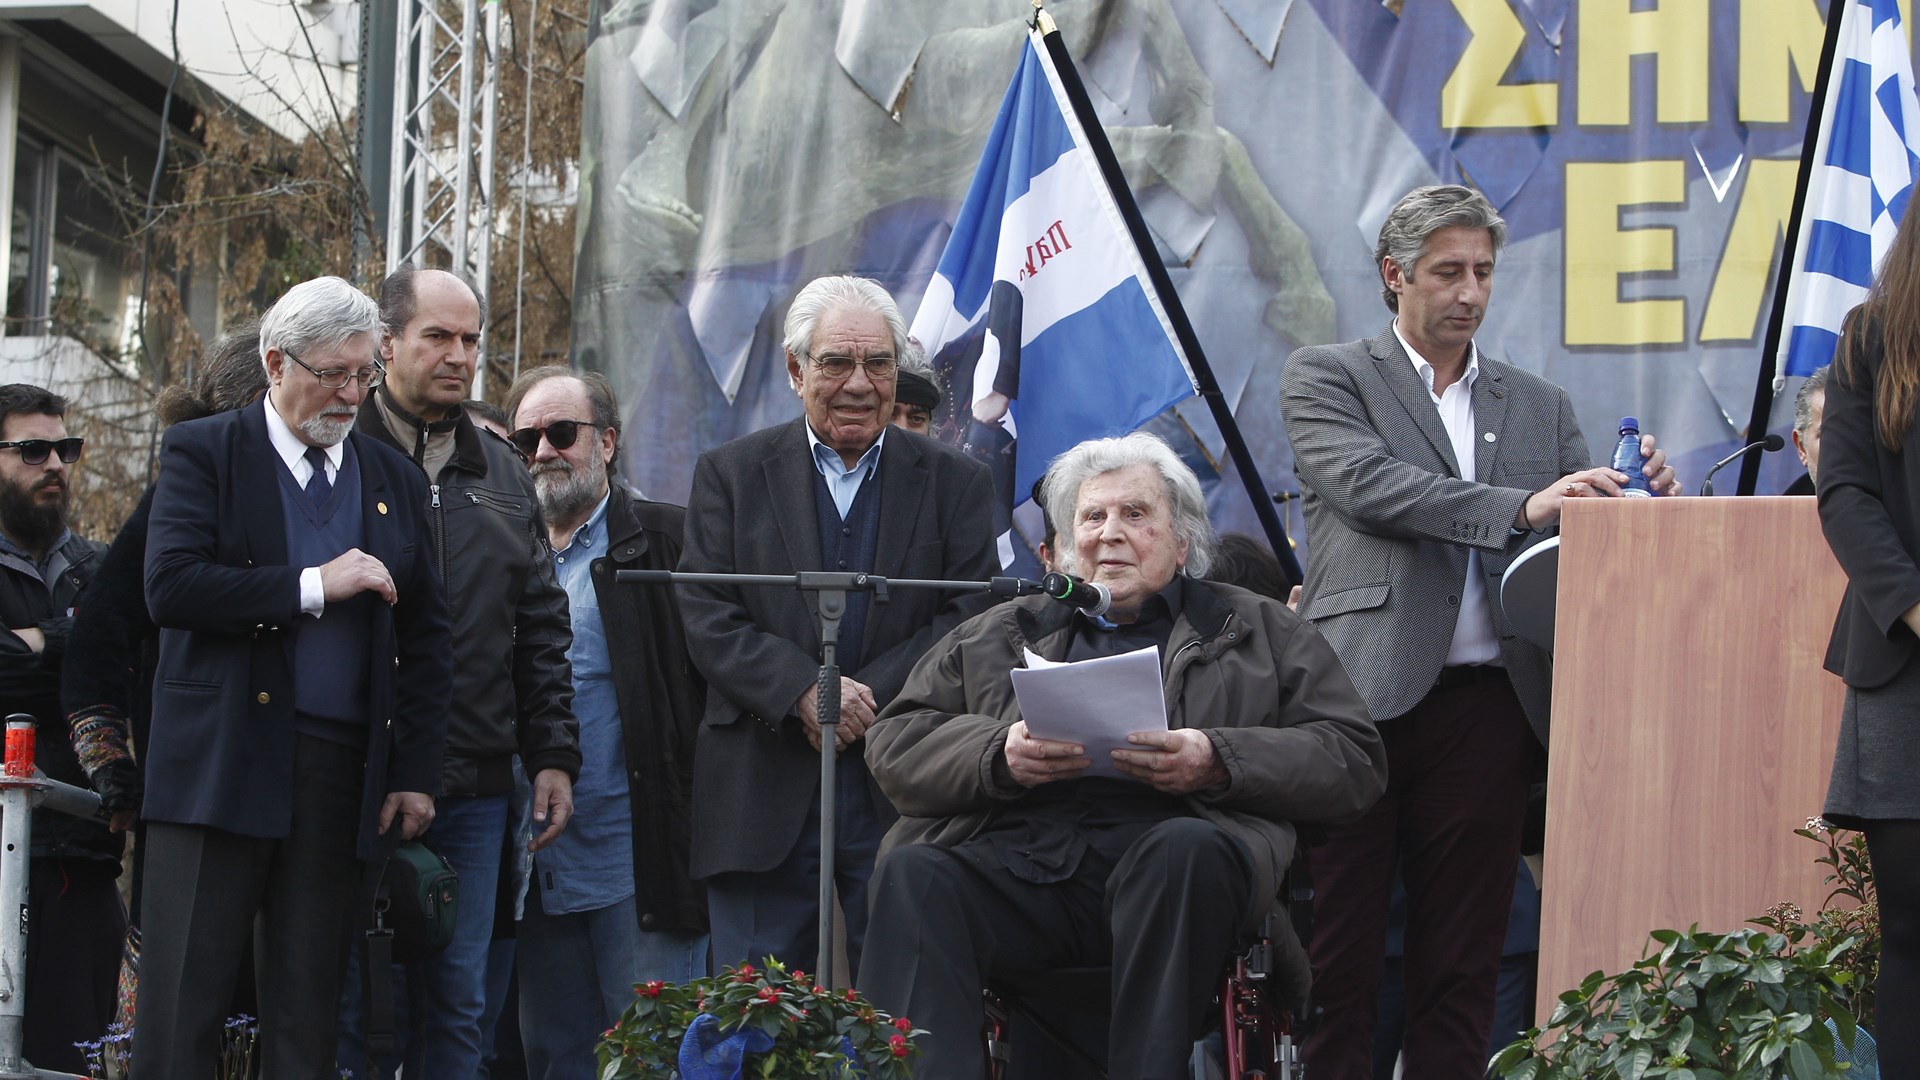 Η ομιλία του Μίκη Θεοδωράκη στο συλλαλητήριο: Μίλησαν οι Έλληνες ενωμένοι  – Δημοψήφισμα αν θέλουν να αλλάξουν το όνομα – ΒΙΝΤΕΟ